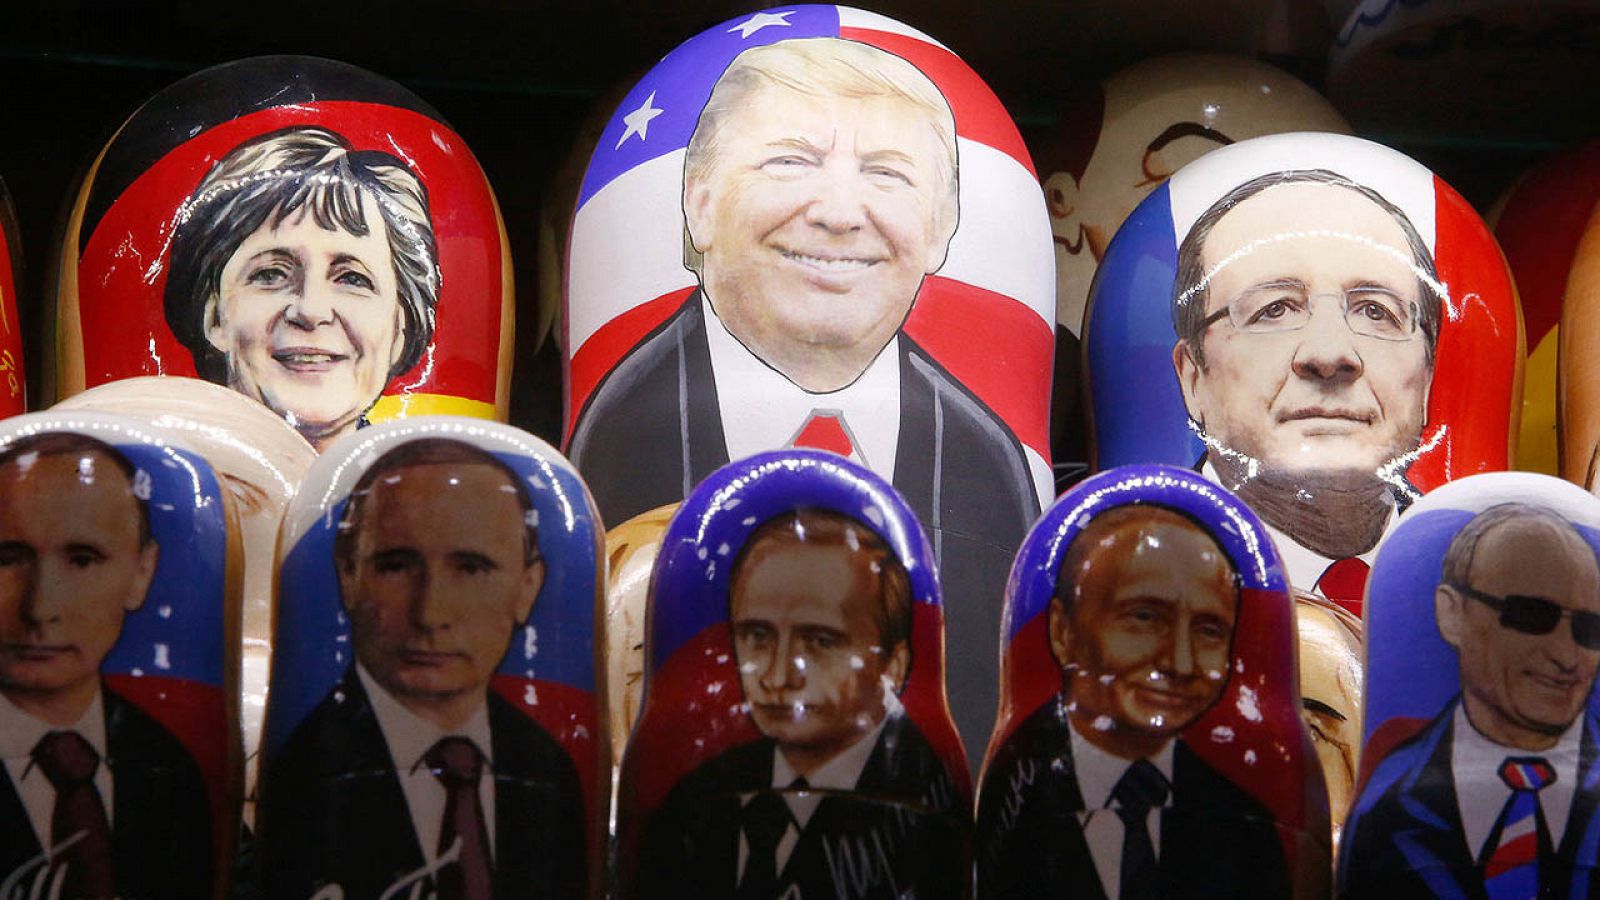 Muñecas rusas (matrioskas) con las caras de Donald Trump y Vladímir Putin, entre otros, en una tienda en Moscú